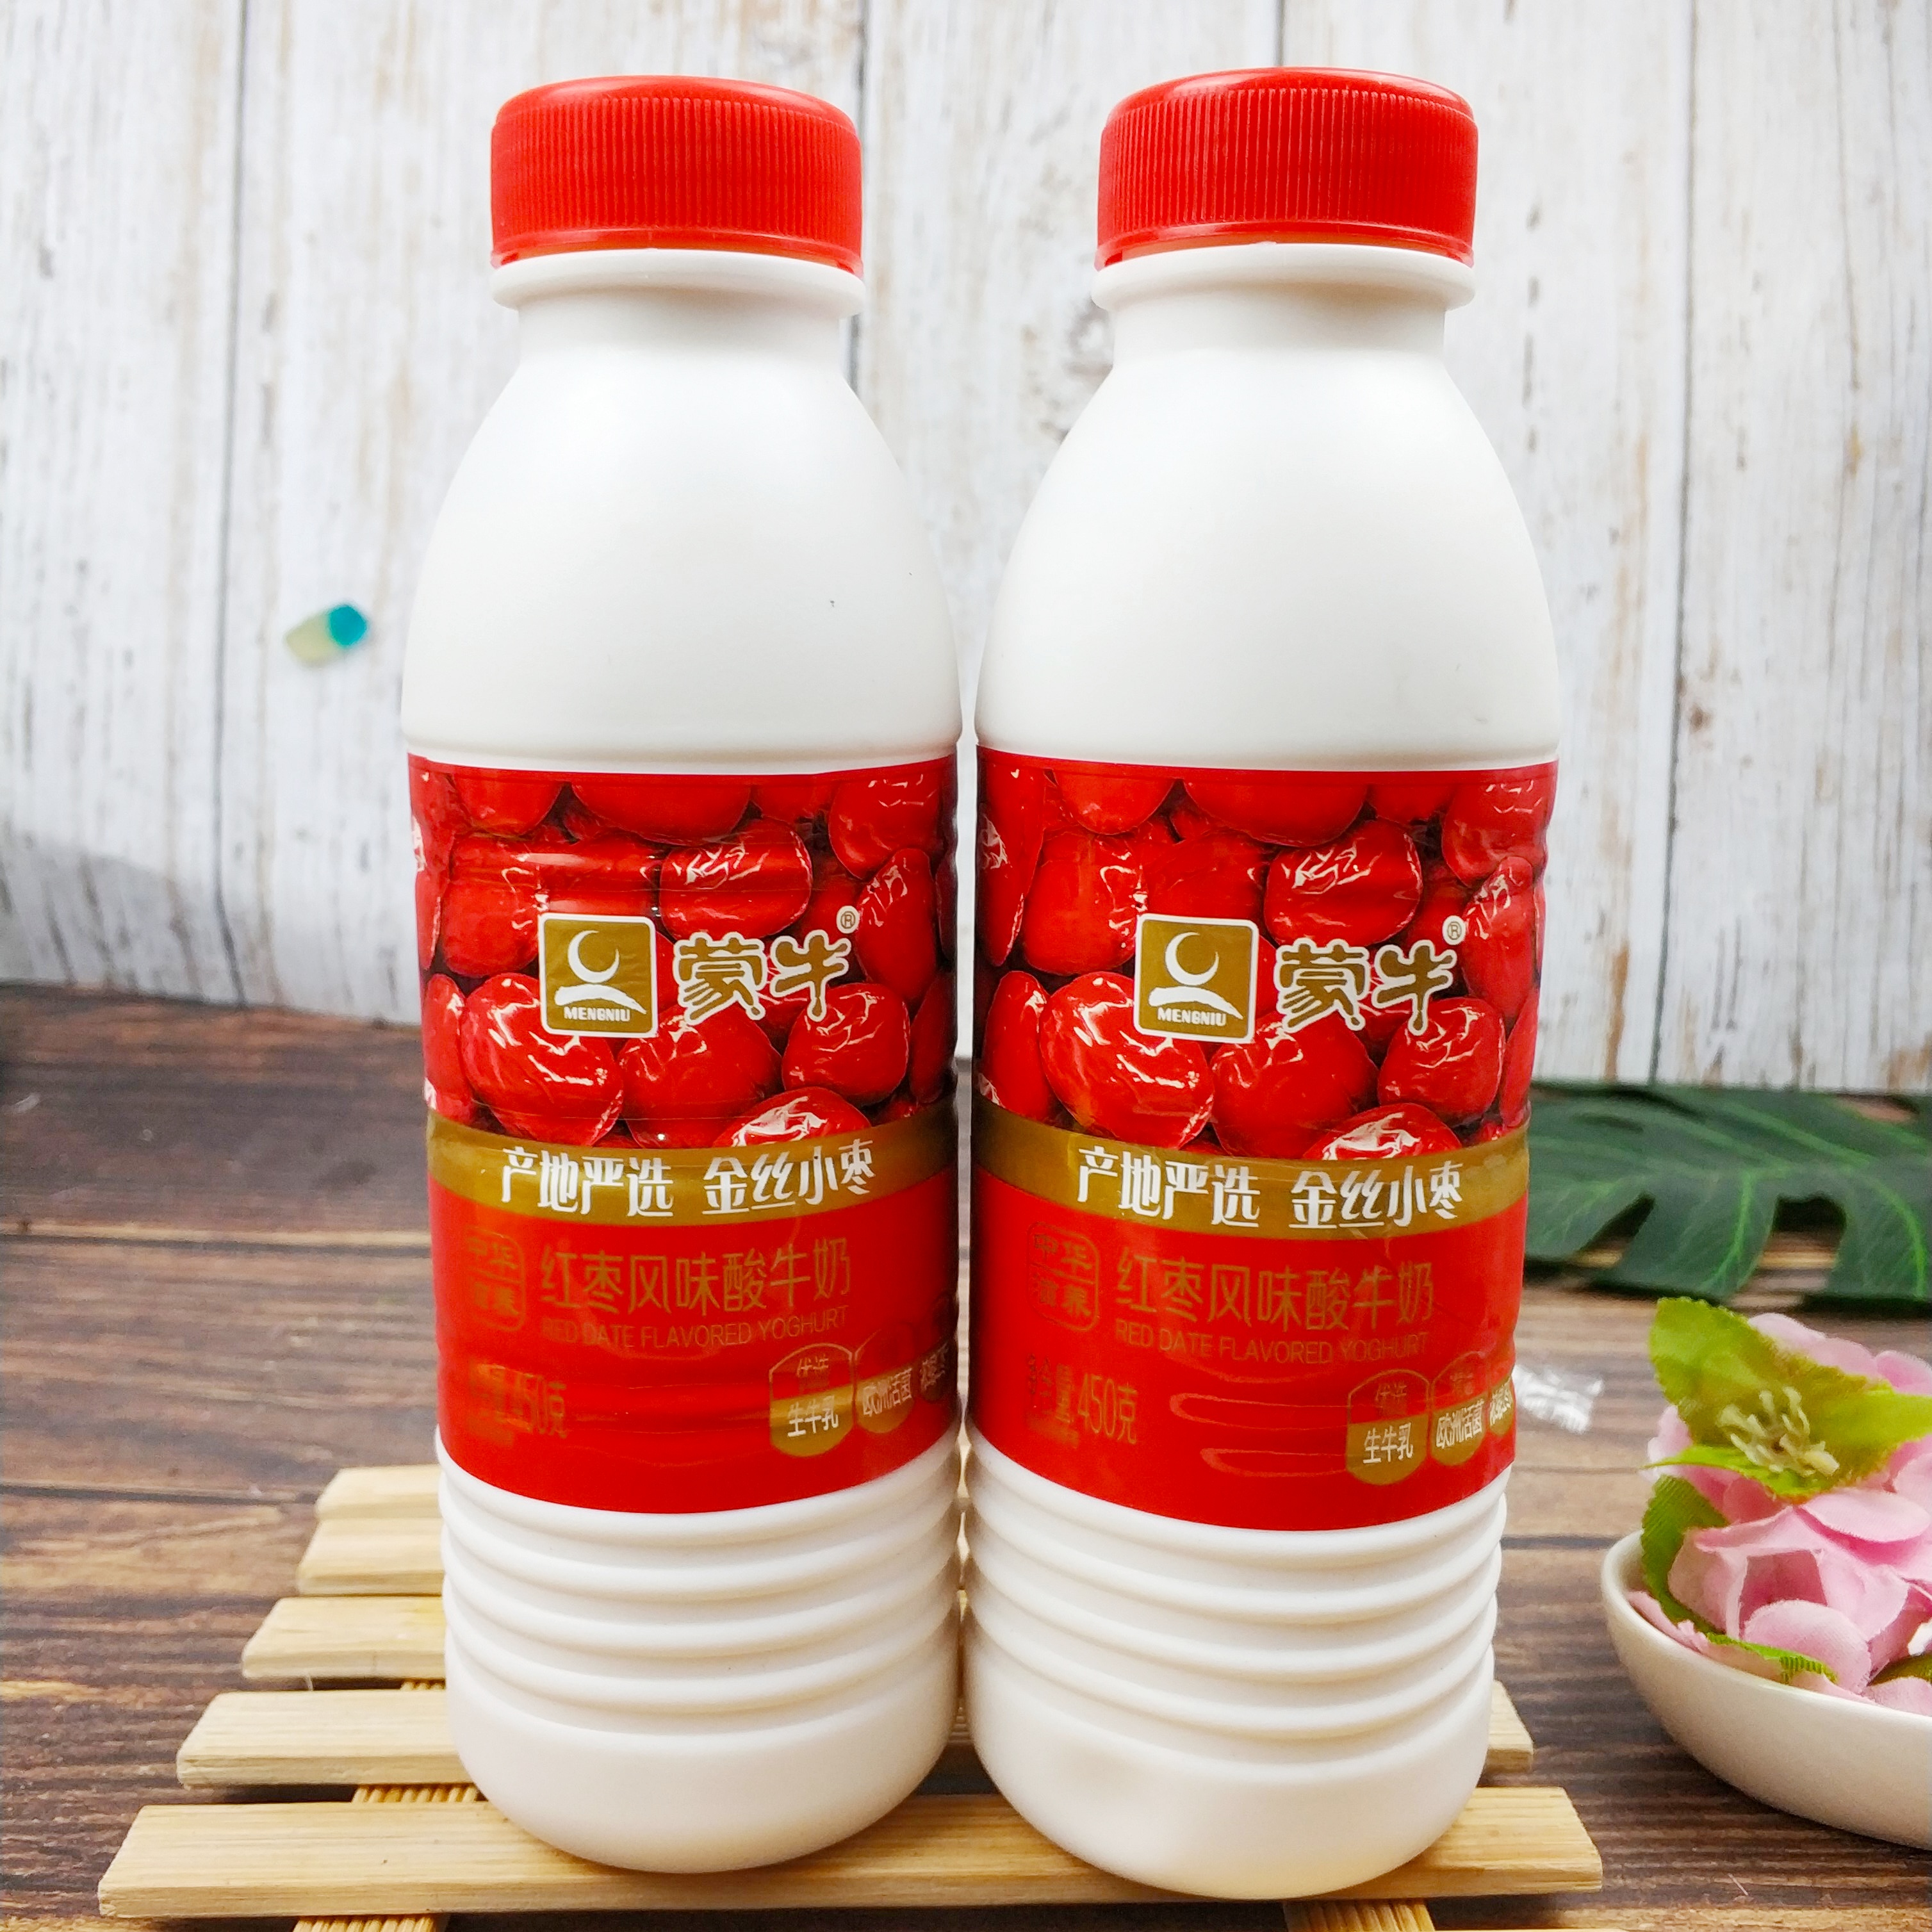 蒙牛酸奶风味酸奶450g发酵乳原味酸奶红枣酸奶瓶装酸奶 原味5瓶(泡沫